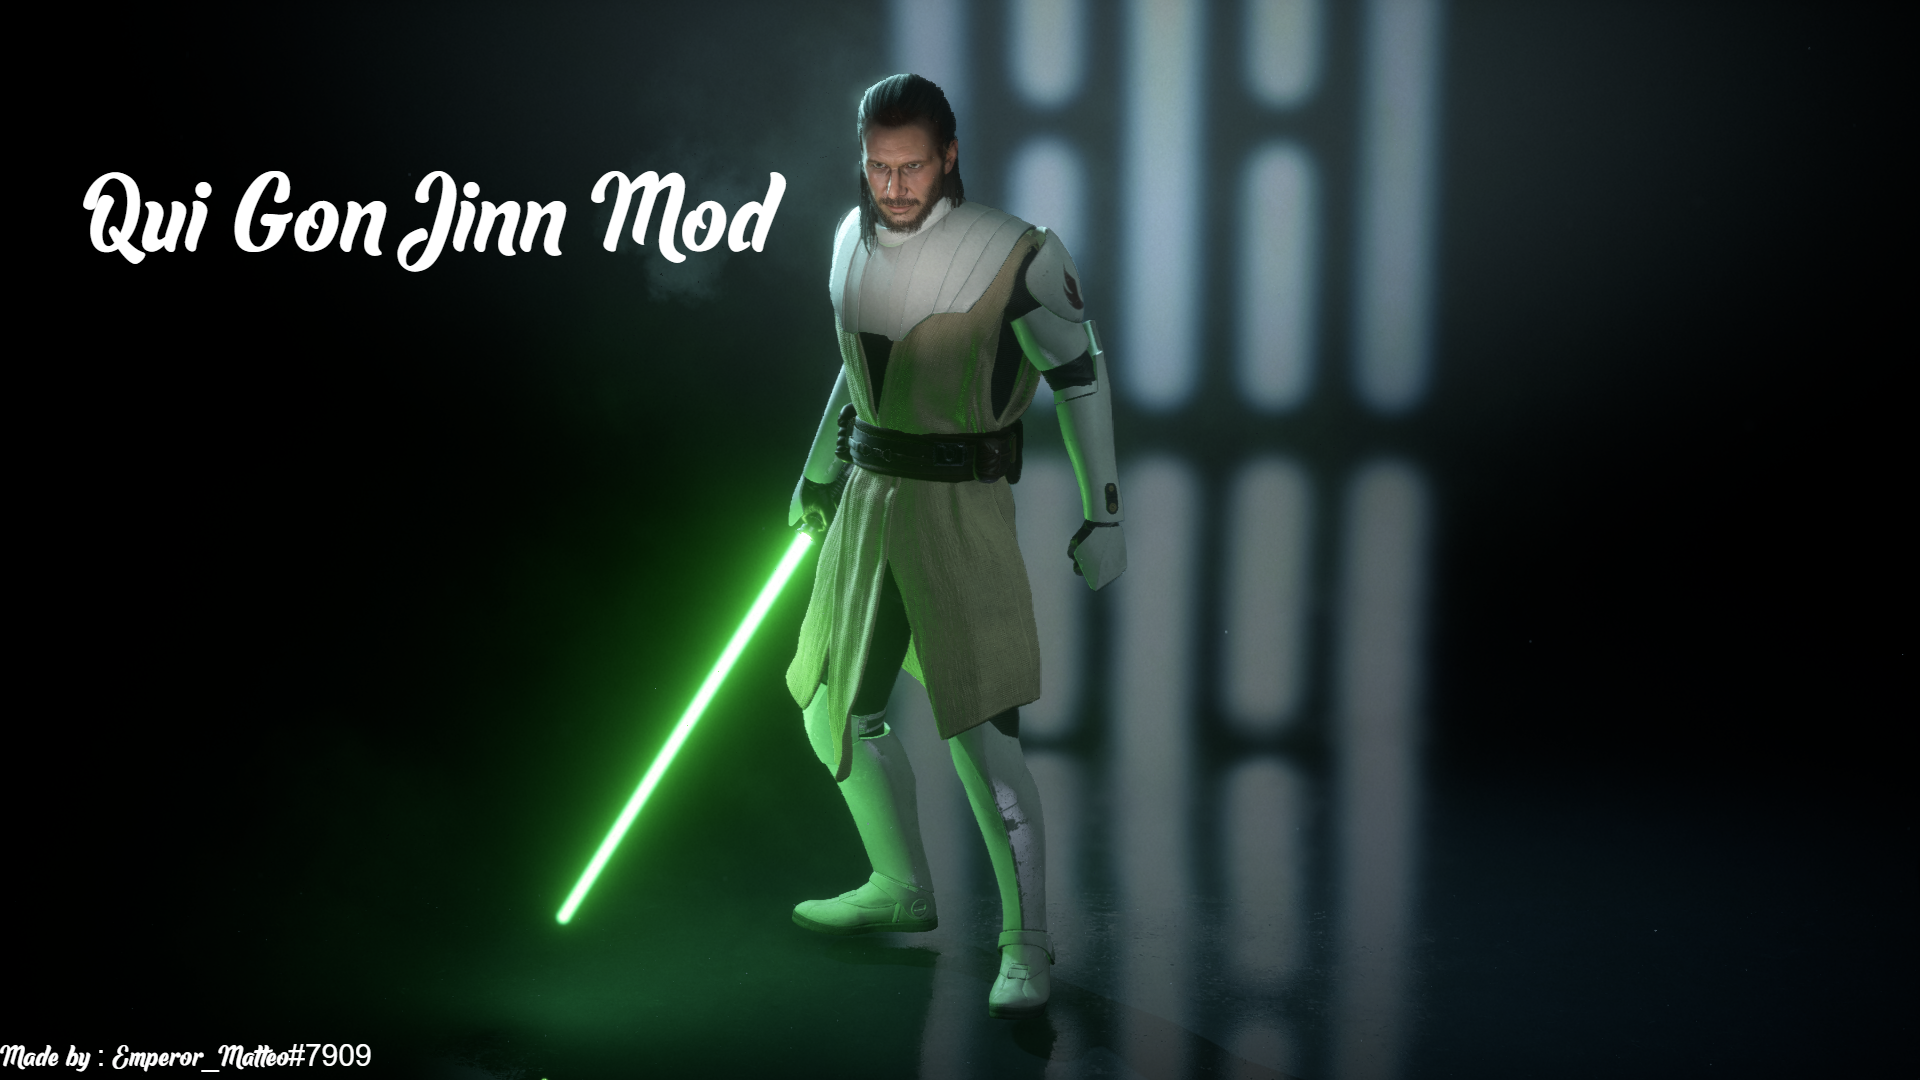 Qui Gon Jinn Mod V2 at Star Wars: Battlefront II.